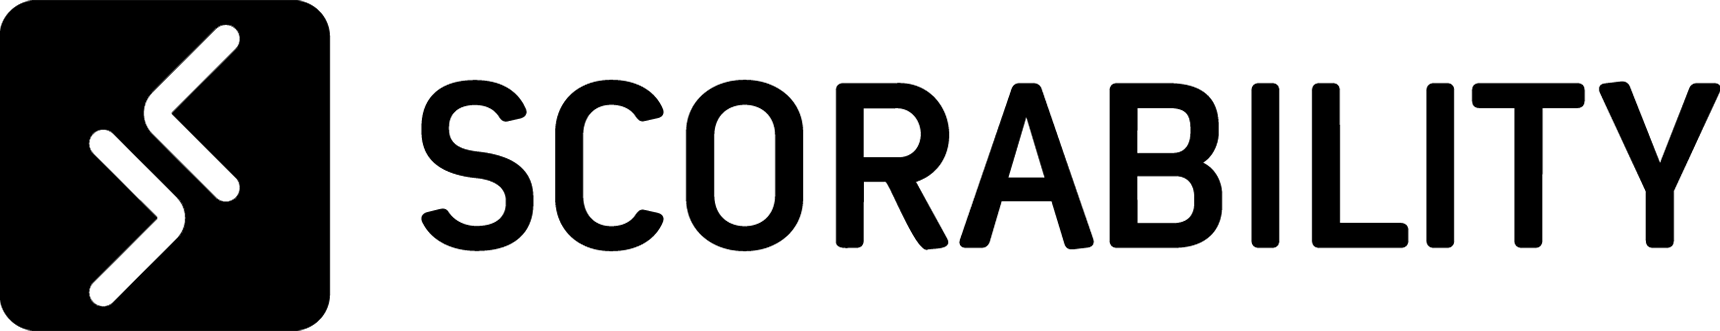 Scorability Logo